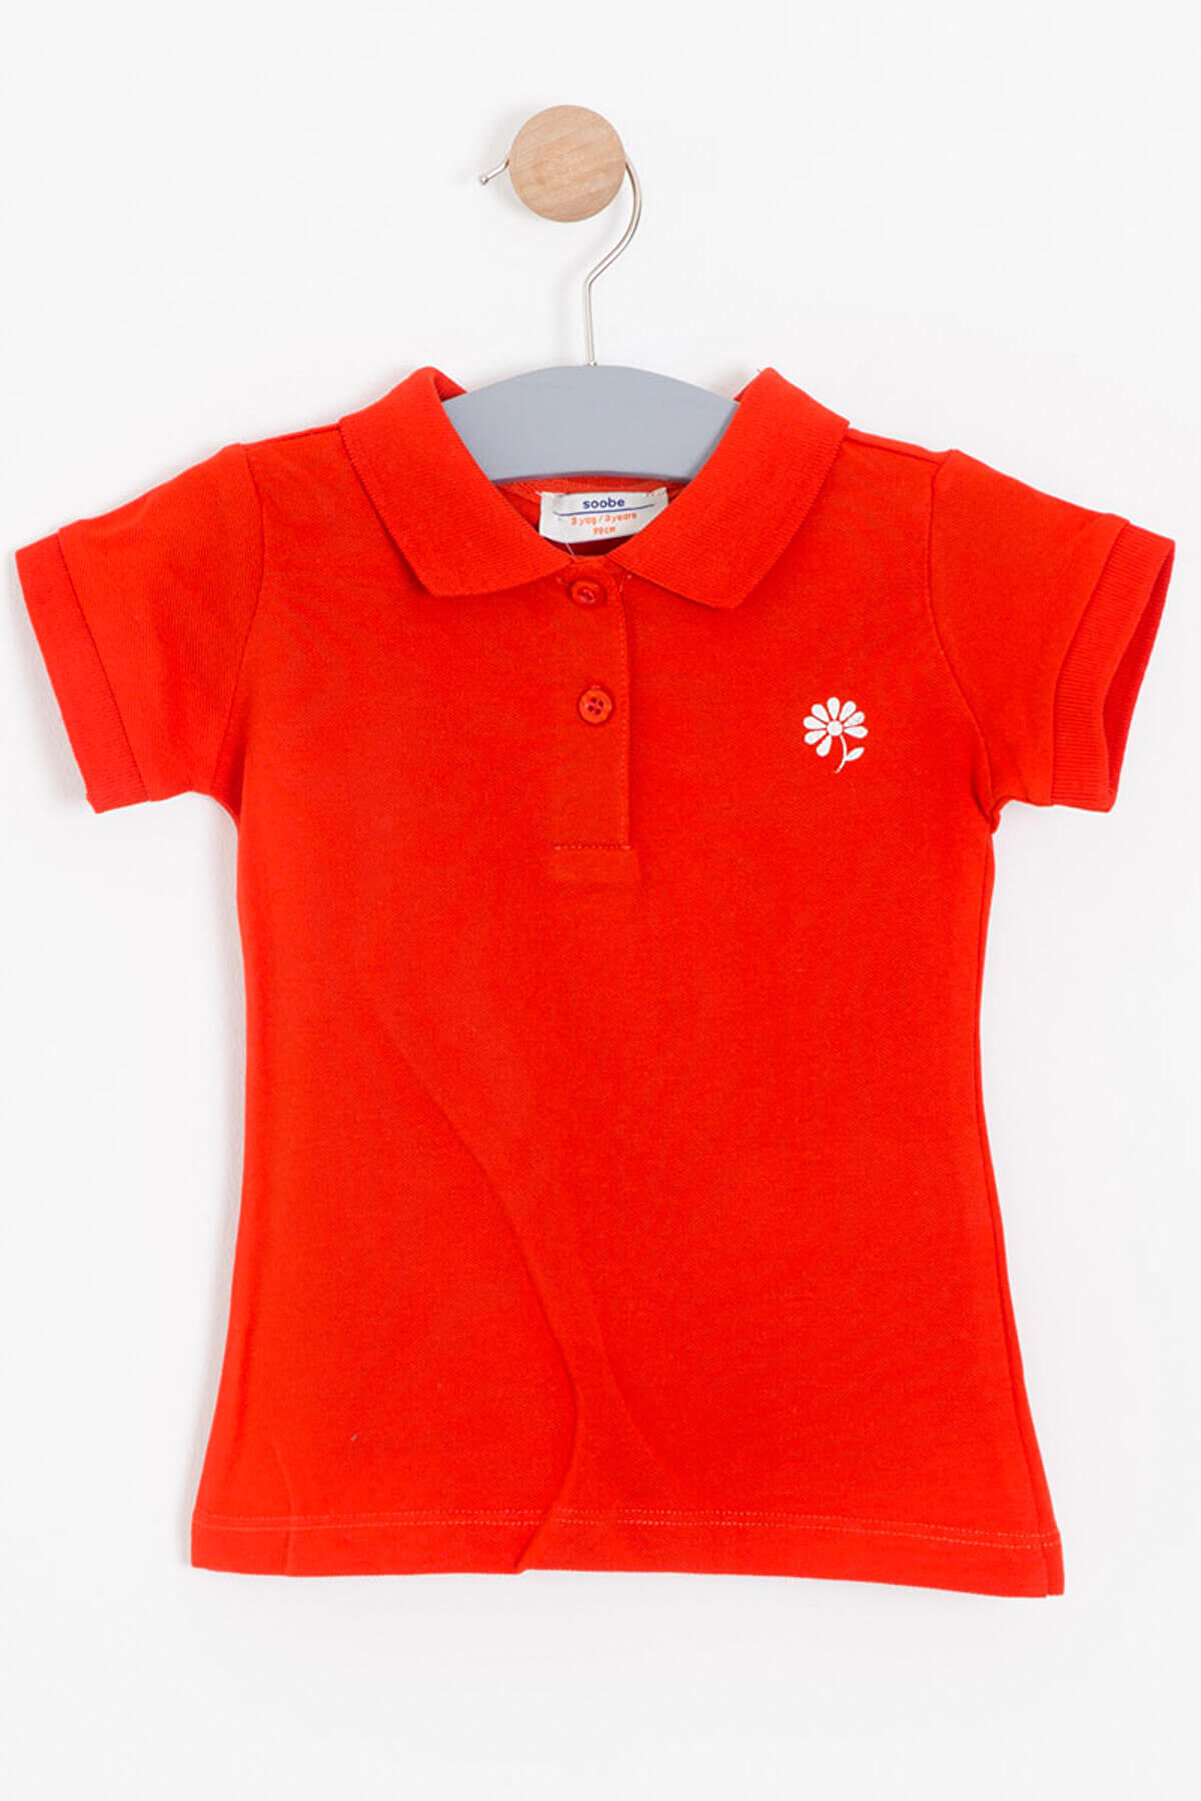 Soobe Kız Bebek T-Shirt Kırmızı  SBEKCTSRT11302_00-0051